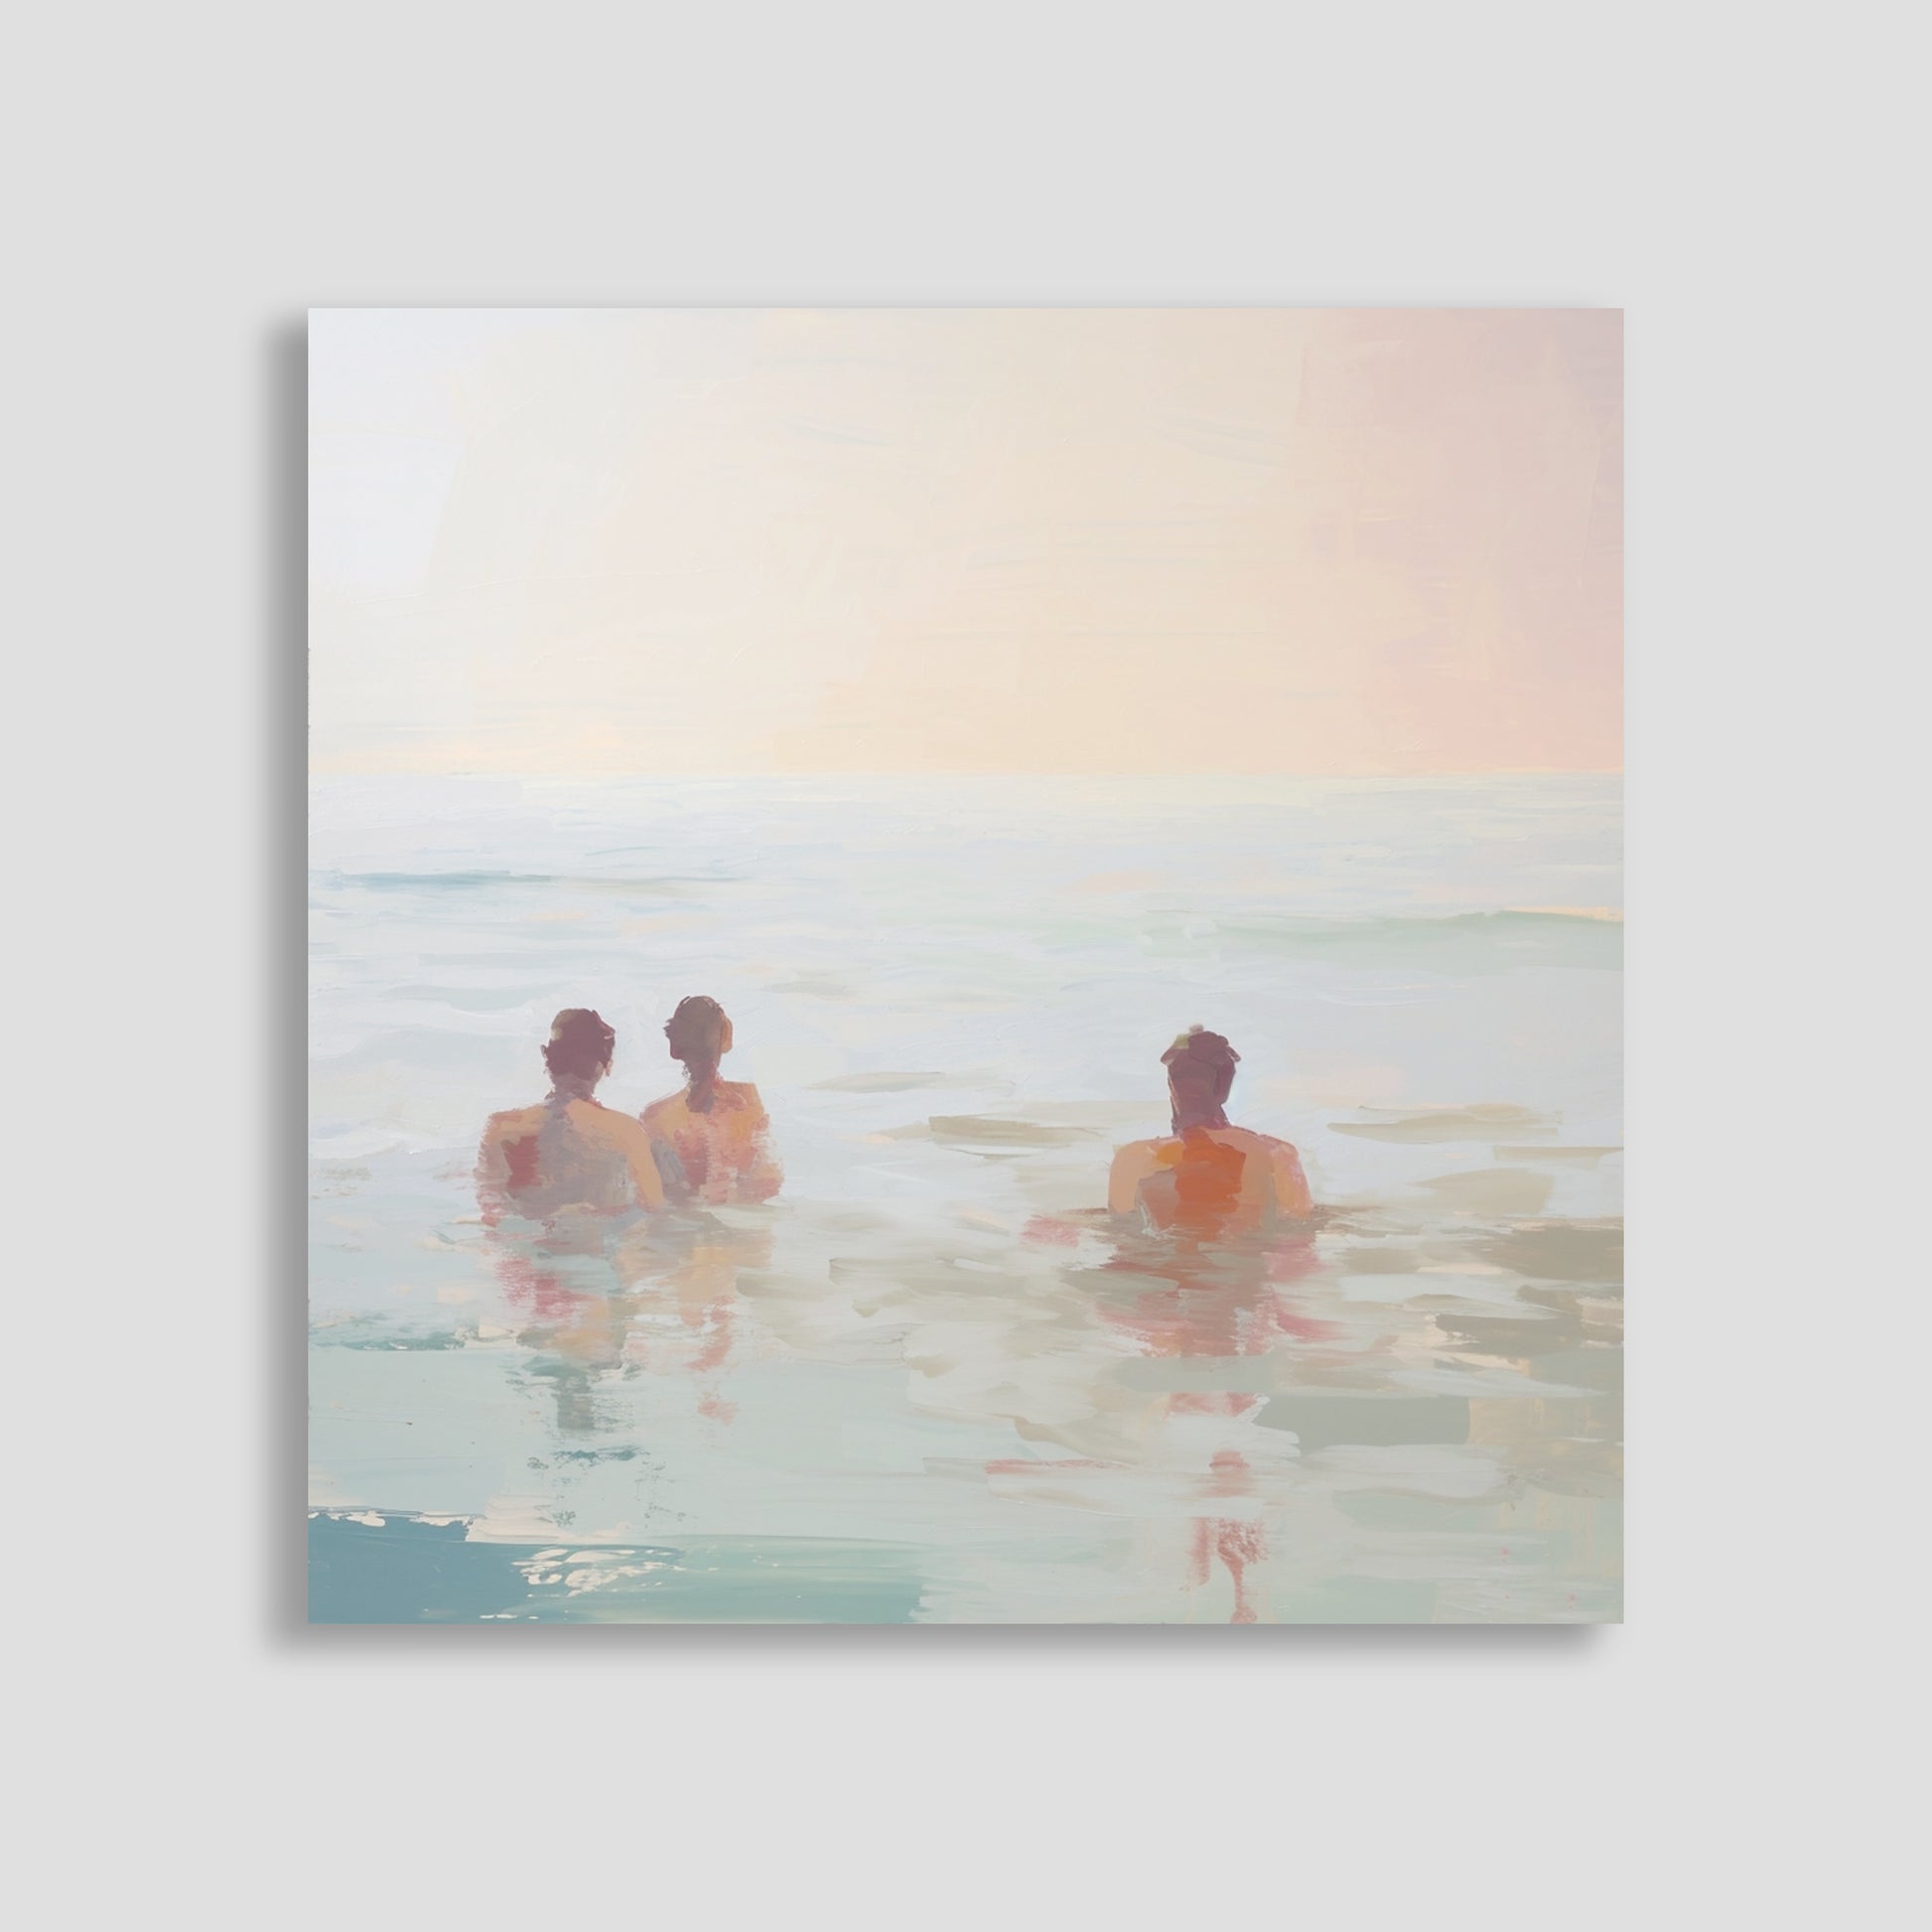 Pintura de tres personas relajándose en el mar bajo un cielo pastel.